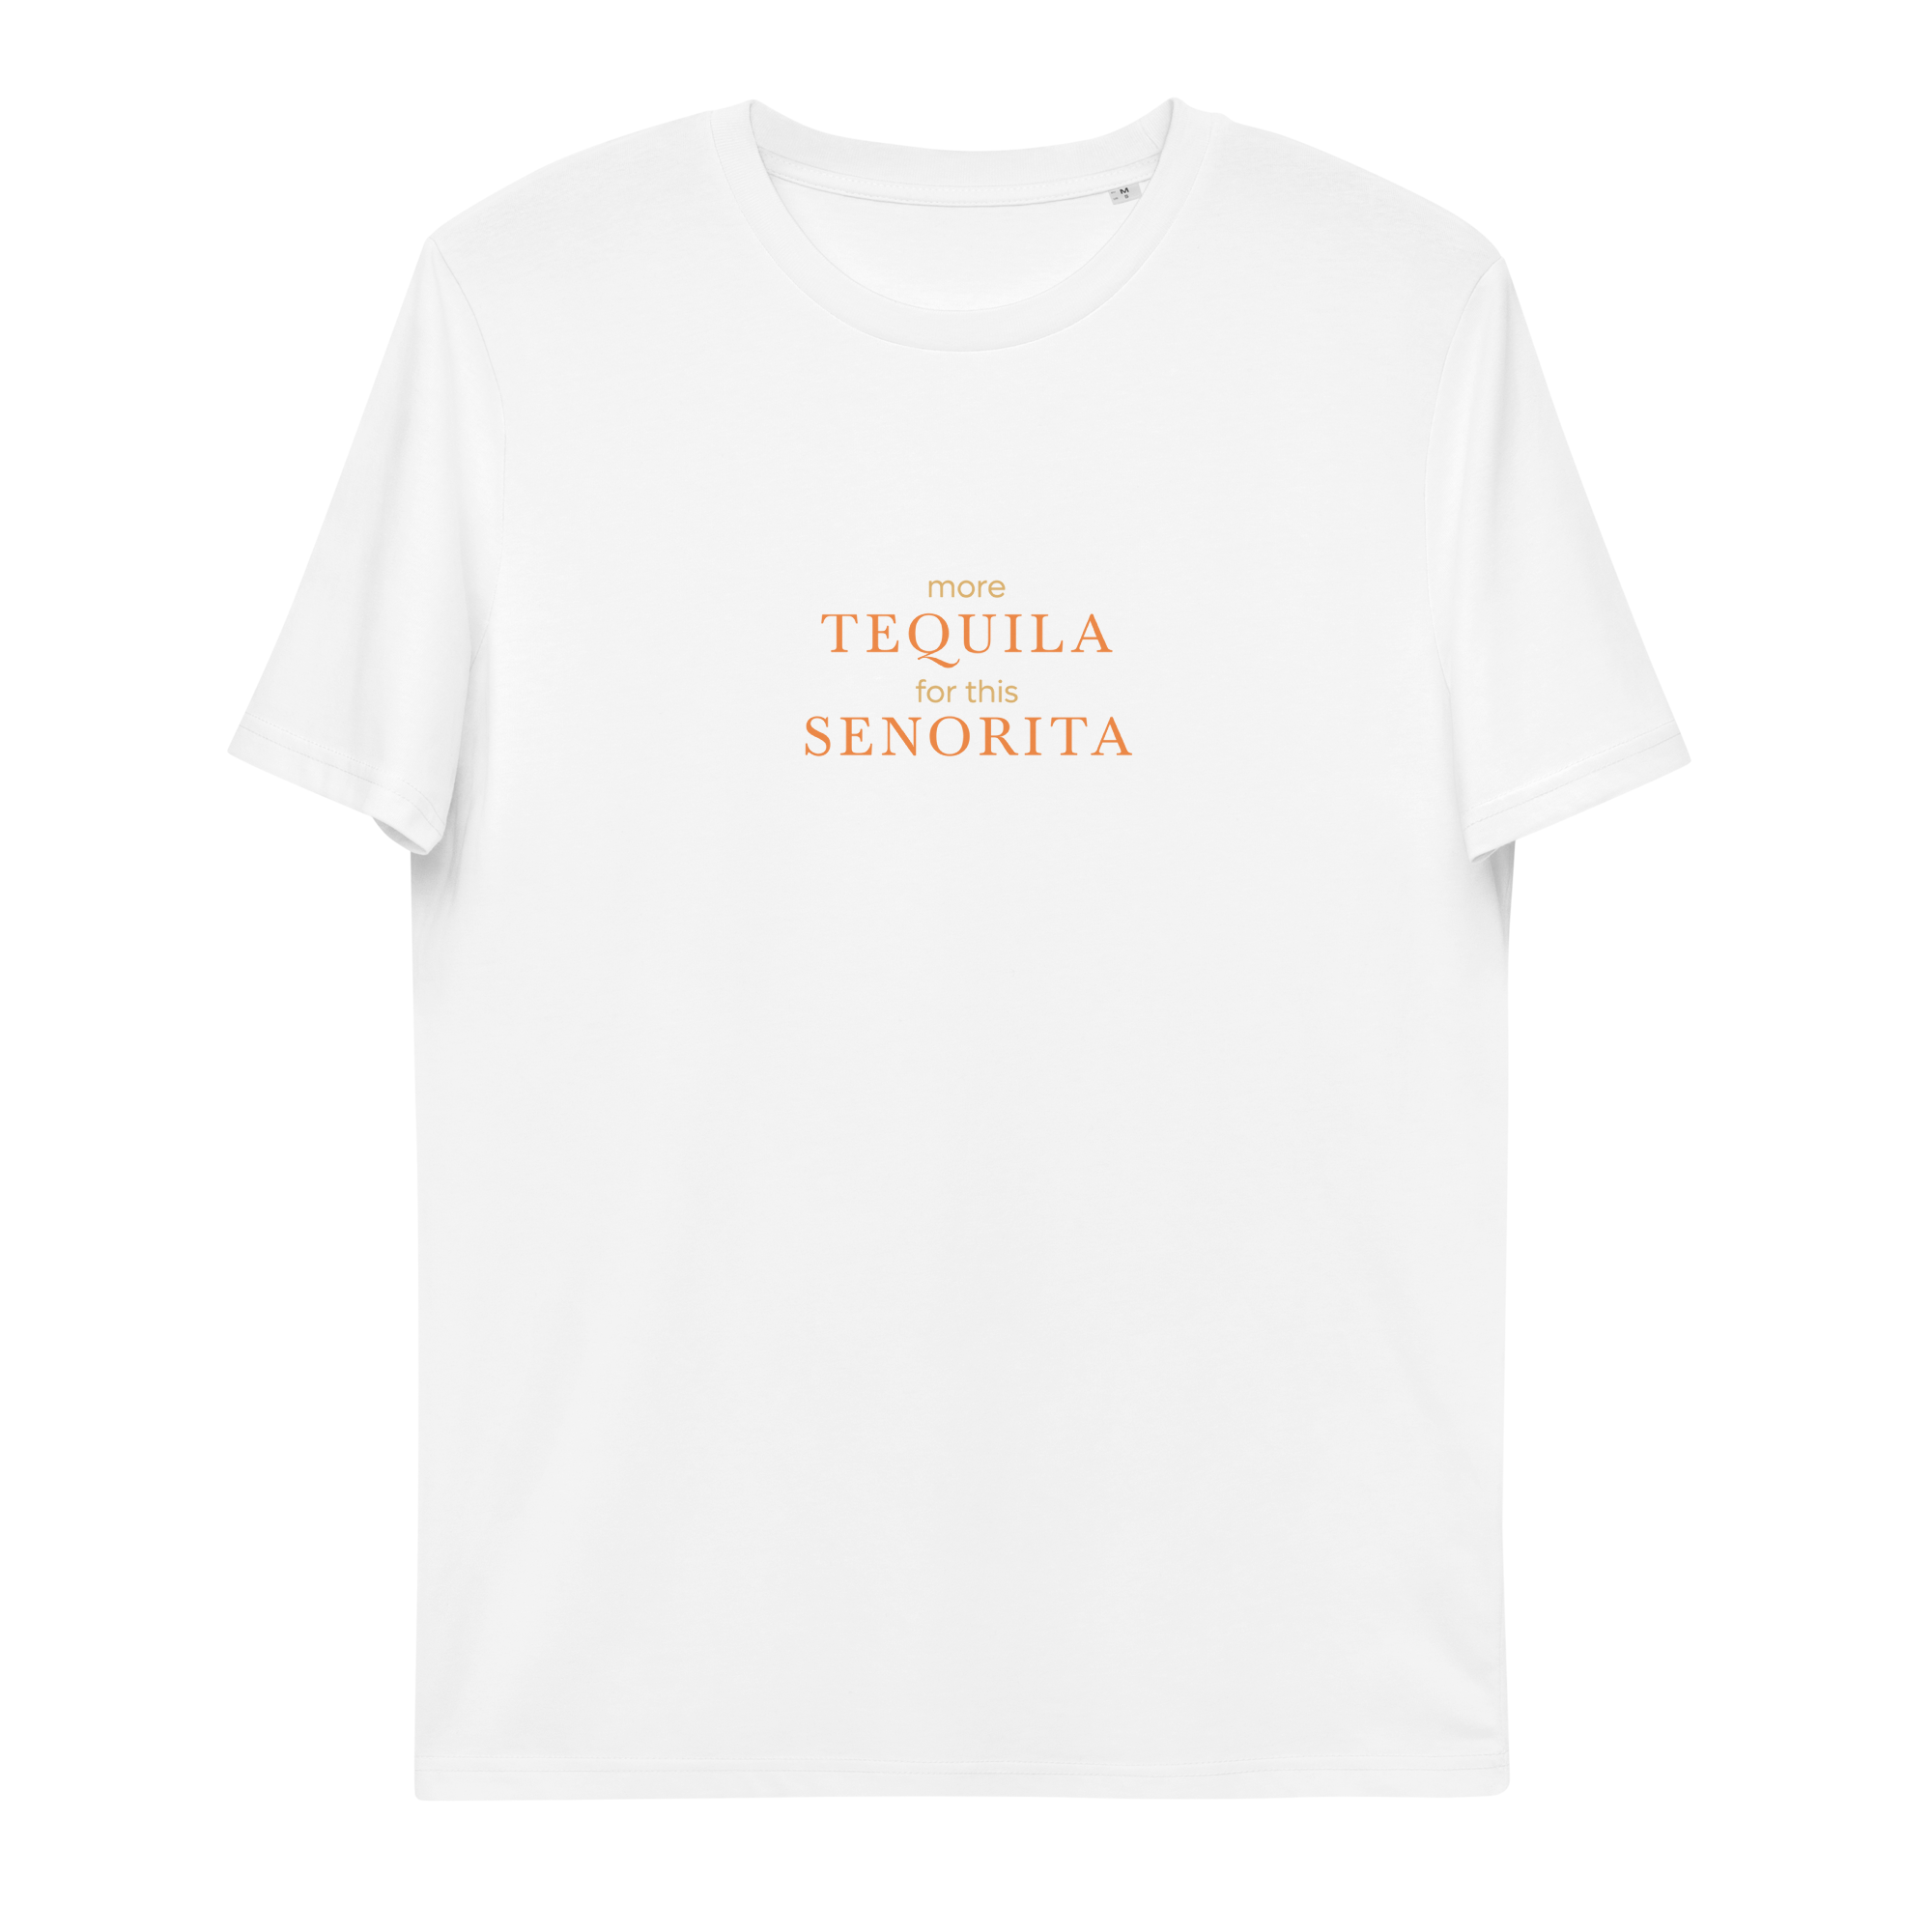 MORE TEQUILA FOR THIS SENORITA Beach Shirt